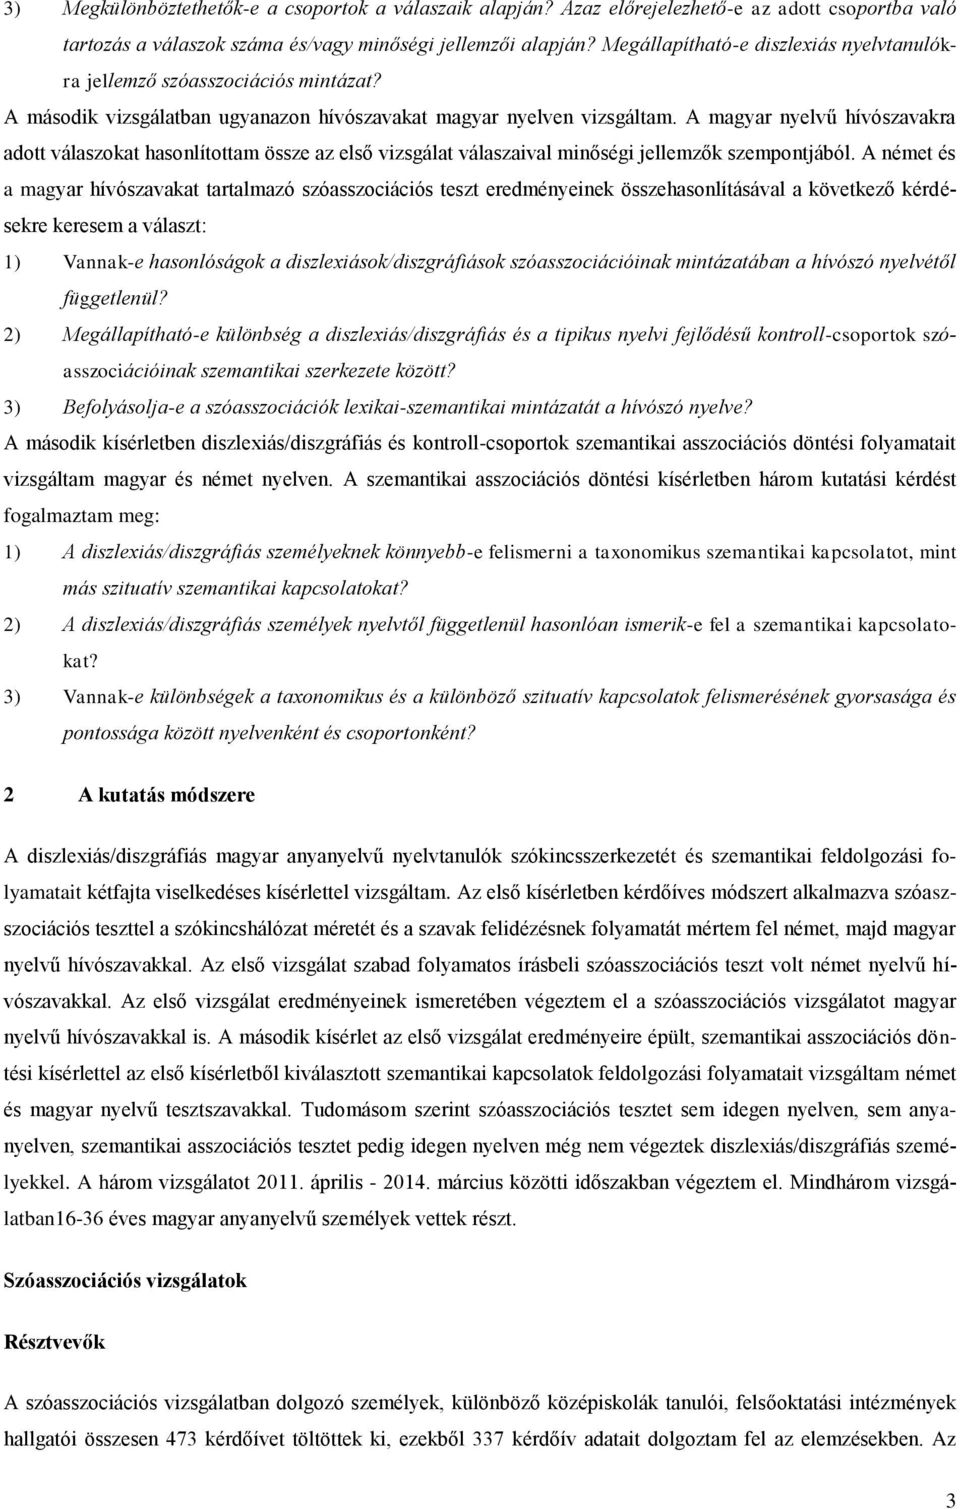 A magyar nyelvű hívószavakra adott válaszokat hasonlítottam össze az első vizsgálat válaszaival minőségi jellemzők szempontjából.